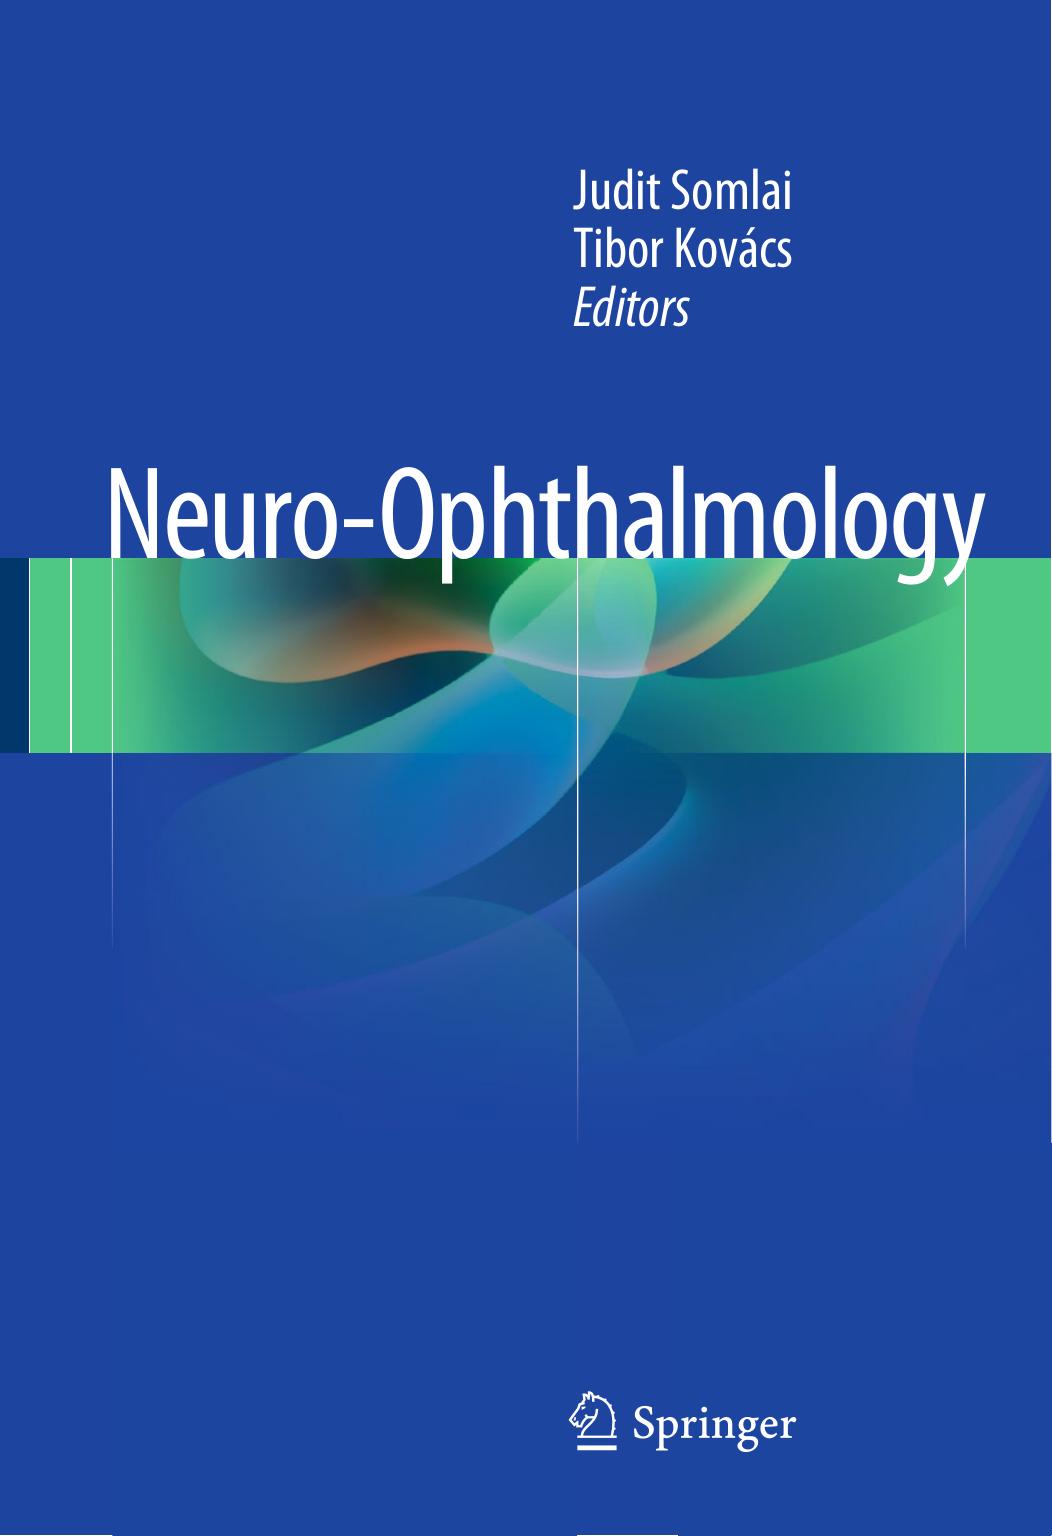 Neuro-Ophthalmology 2016